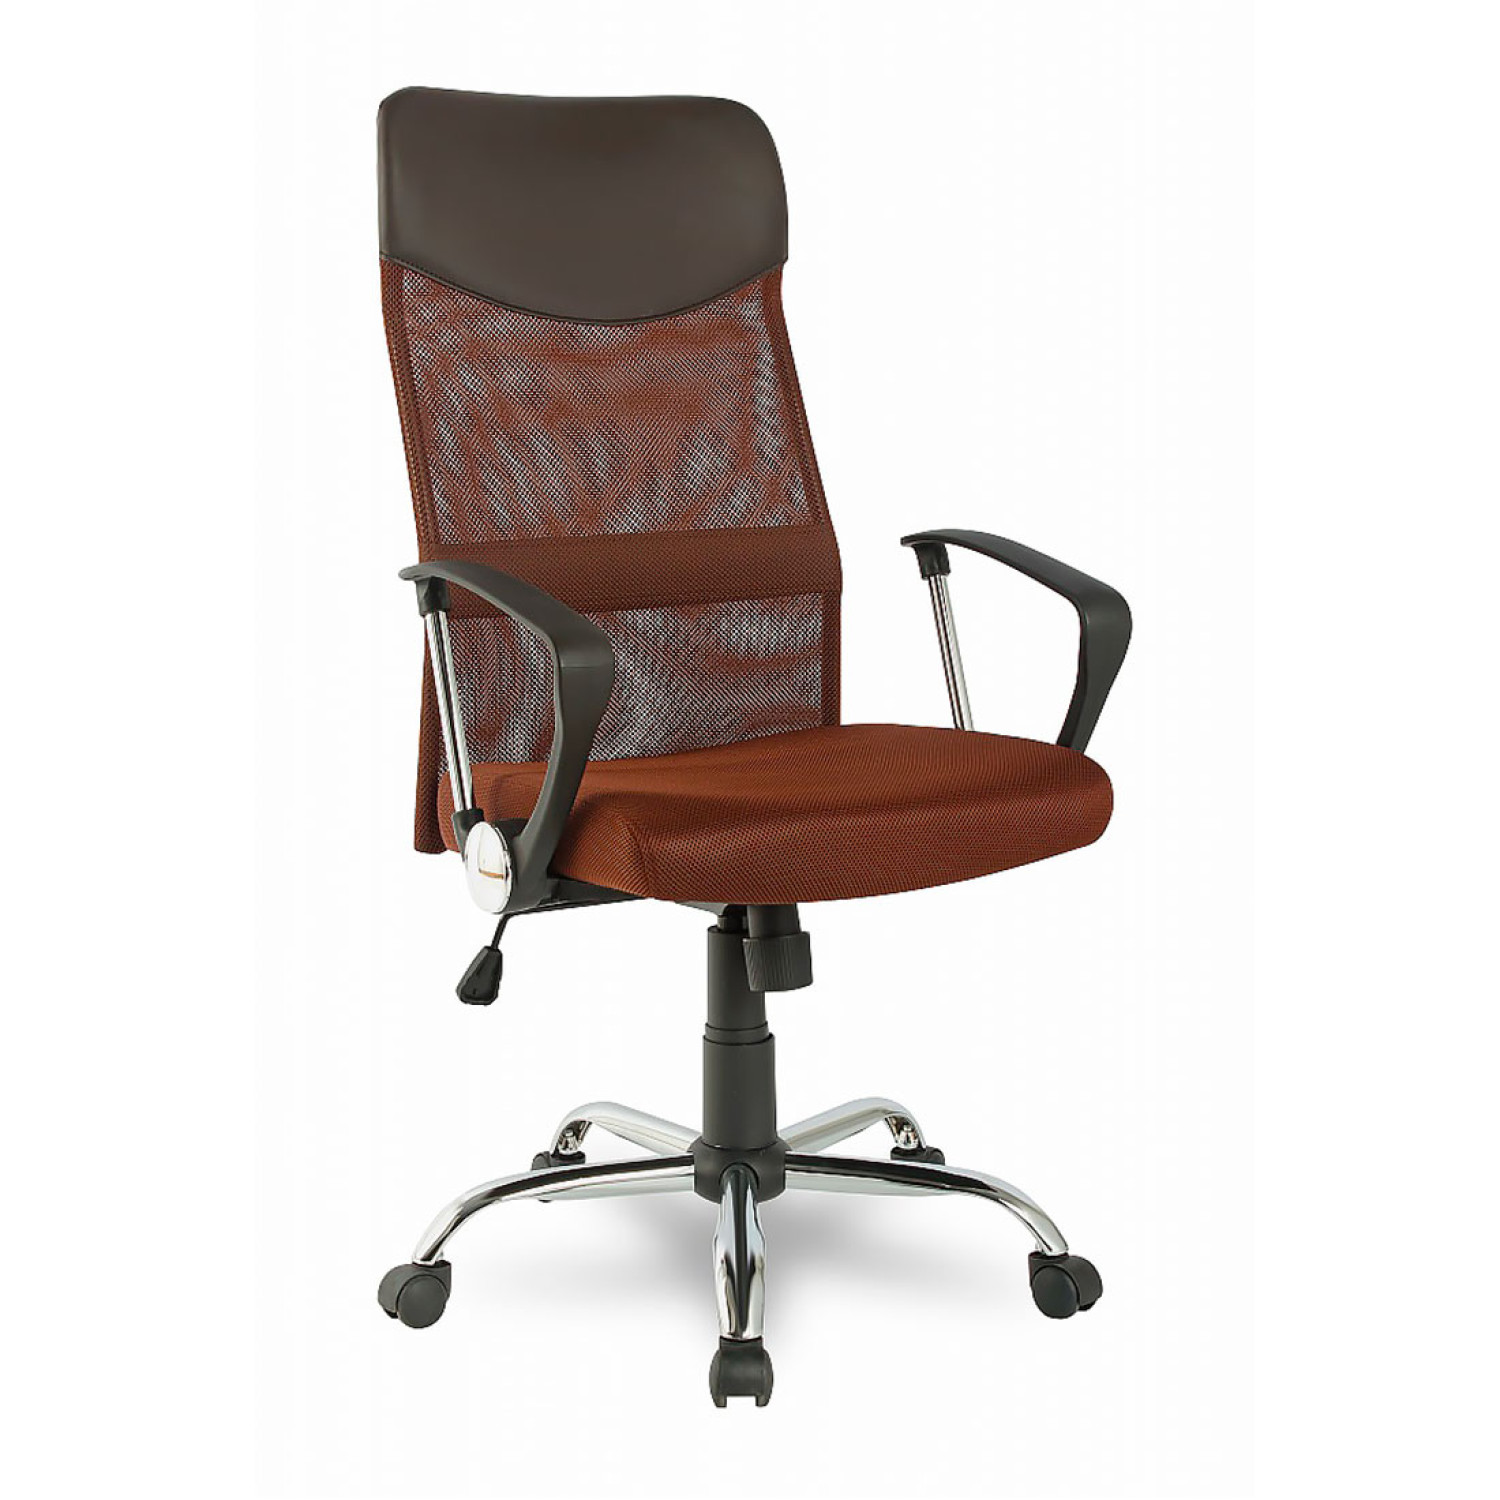 Компьютерные кресла College H-935L-2 коричневый фото 1 — New Style of Furniture